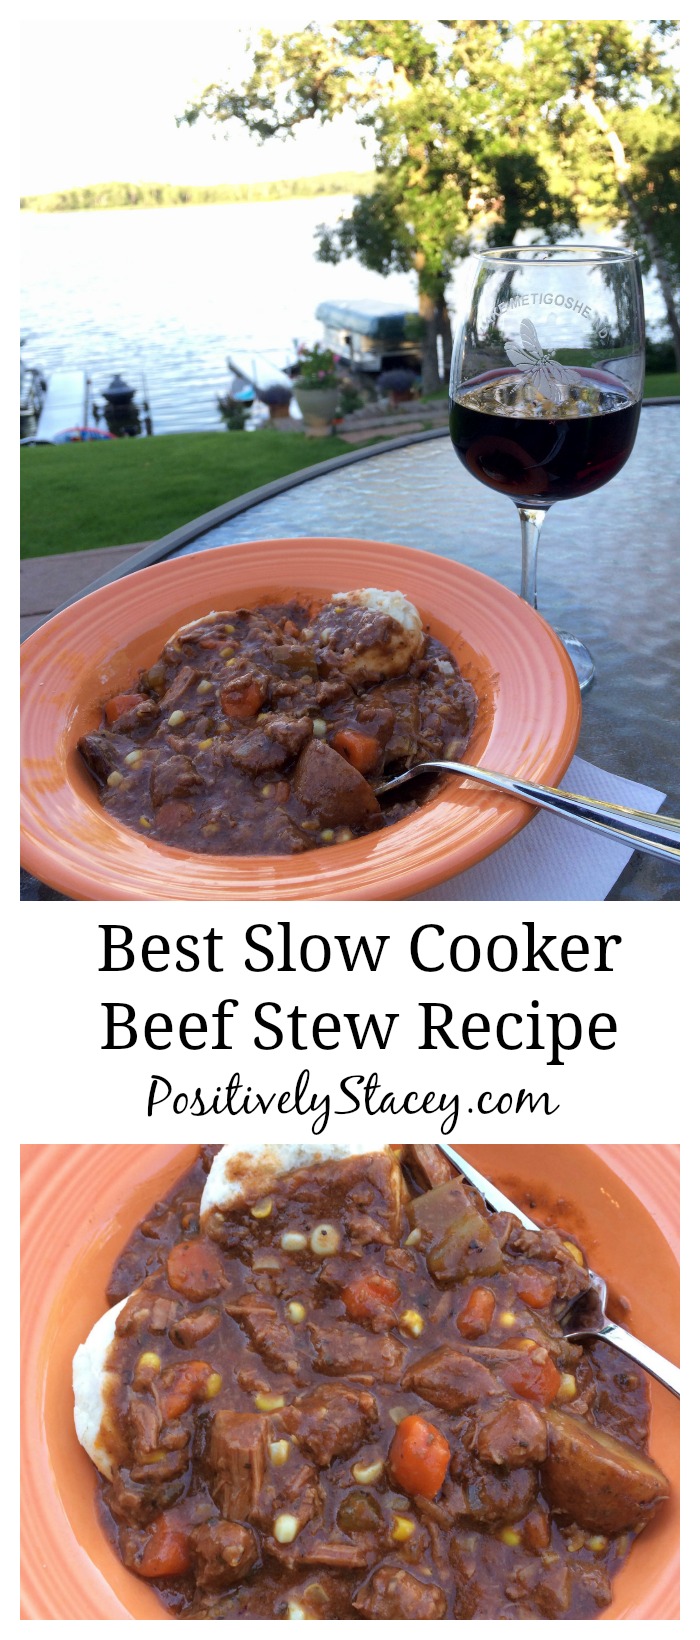 Best Slow Cooker Beef Stew Recipe